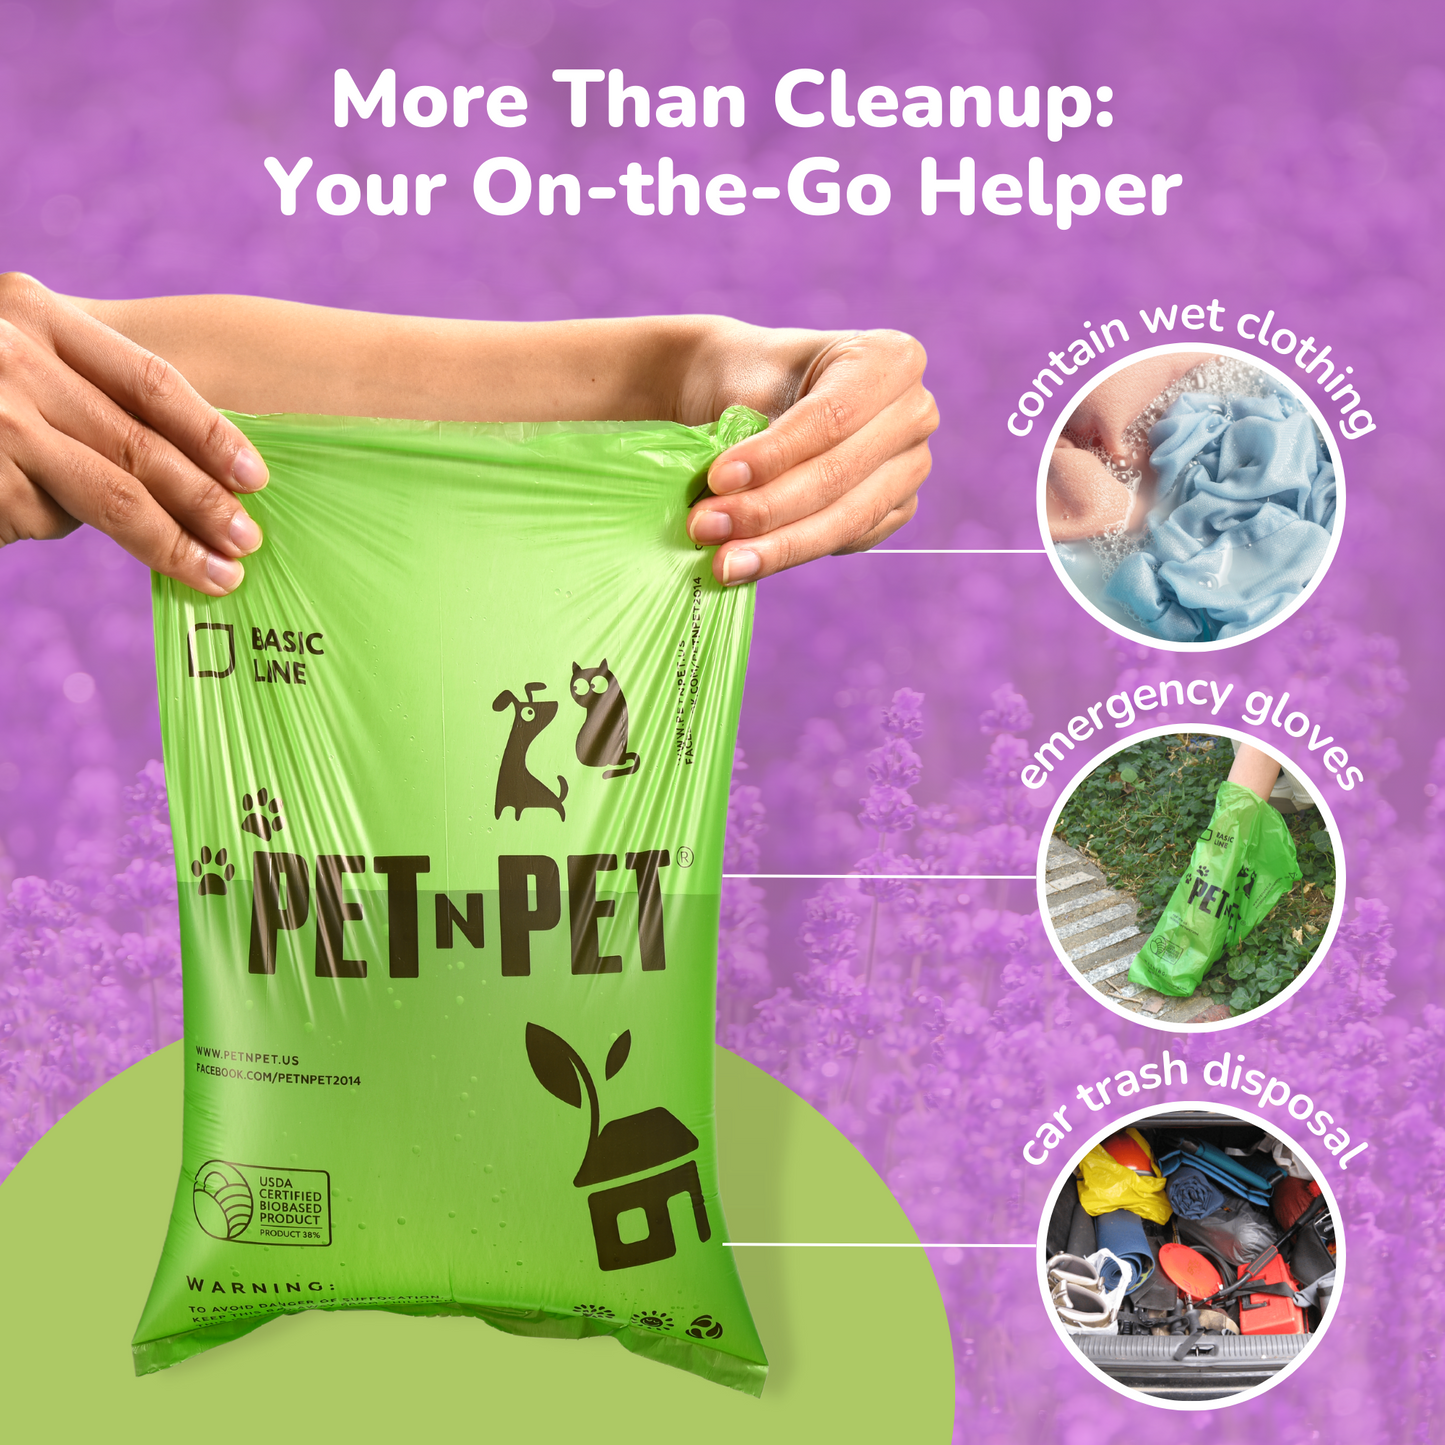 Pet N Pet 270 Lavender-Scented Dog Poop Bags